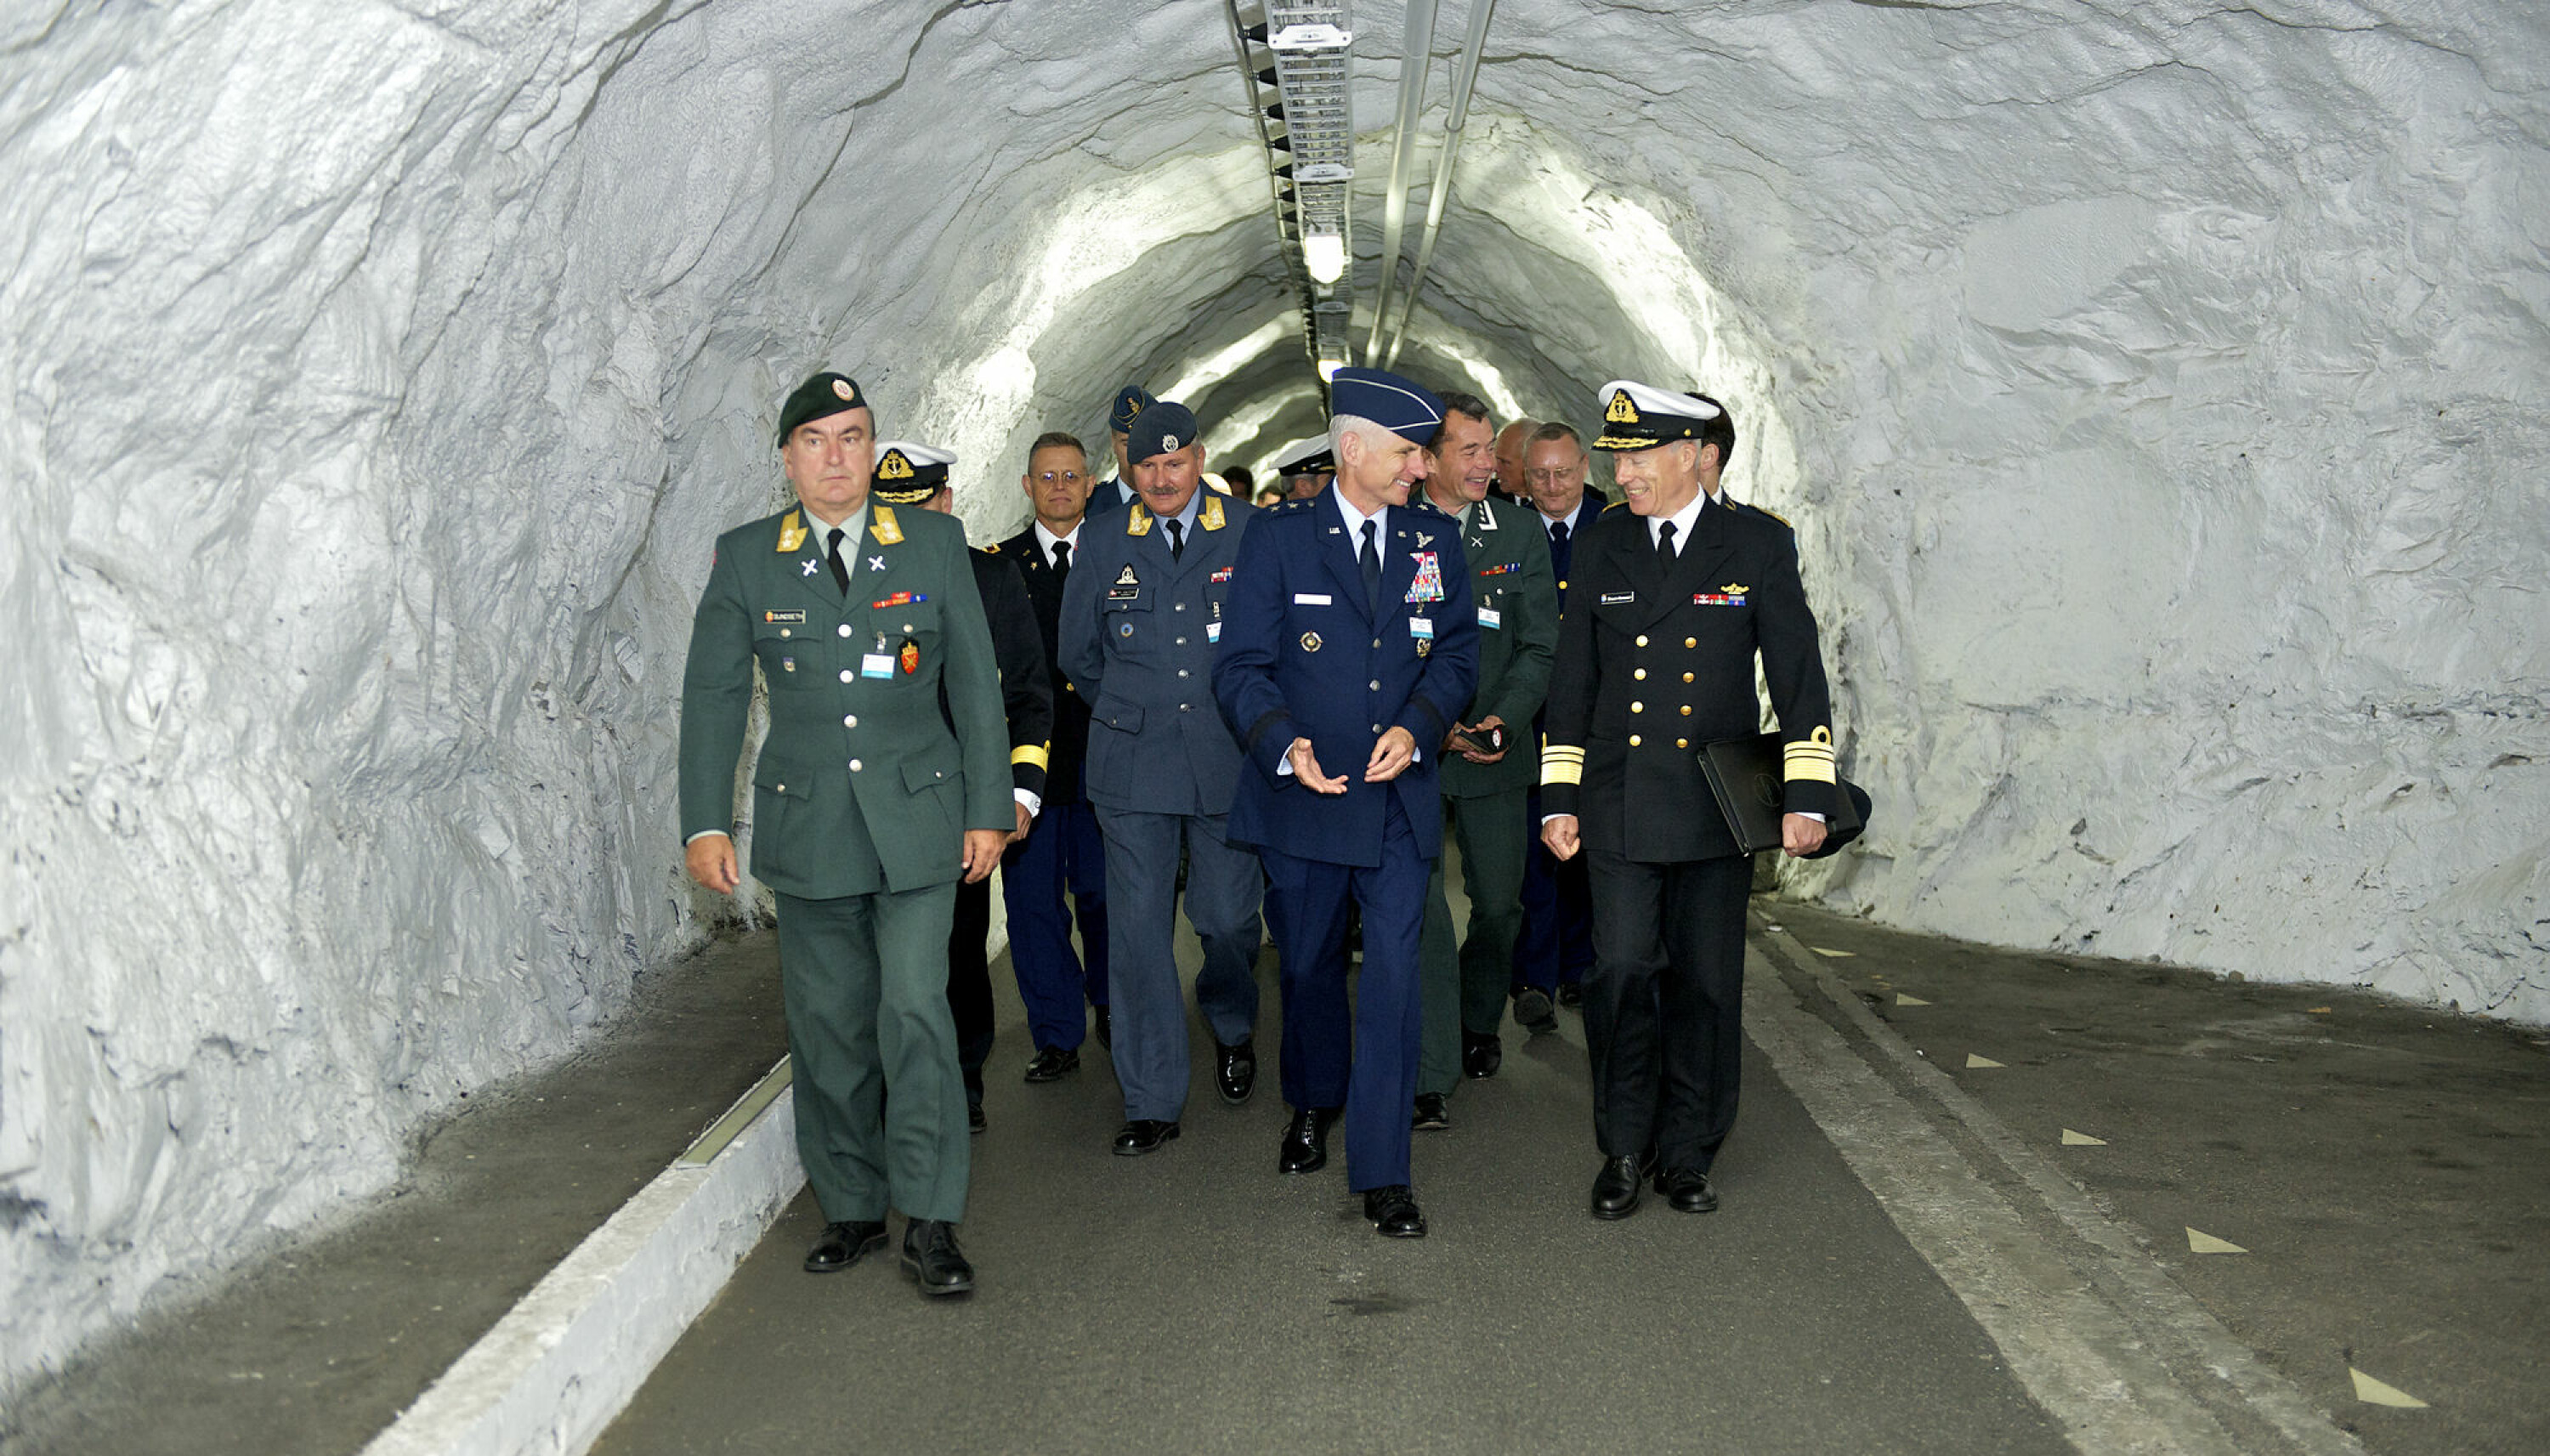 Fra nordområde konferansen i Bodø september 2012
På vei inn tunnellen til FOH reitan